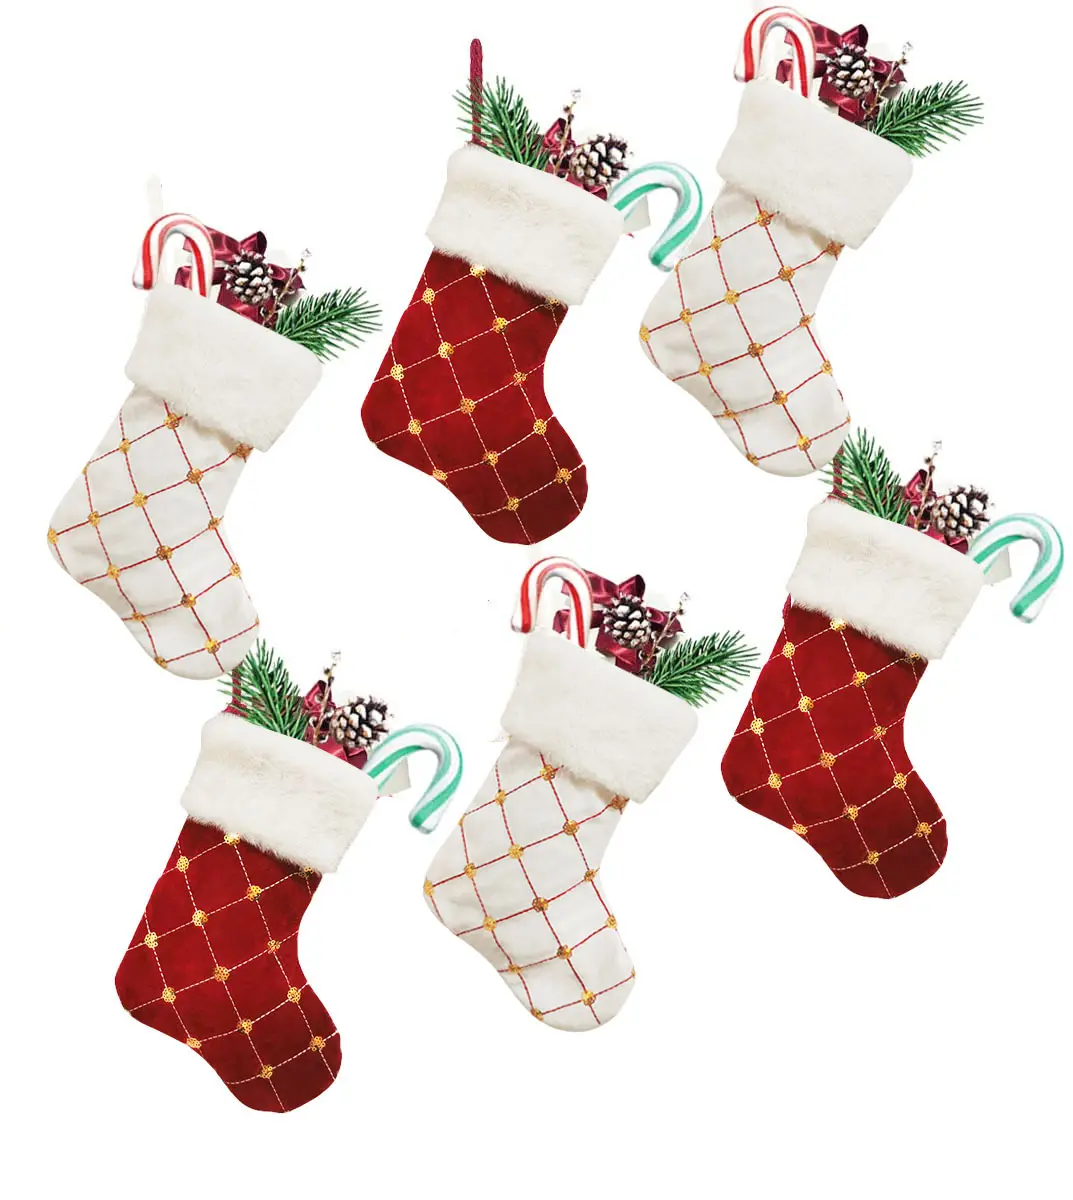 Nouvel arrivage de décoration de Noël Bas de Noël en polyester de 9 pouces Cadeaux pour arbre à broder Bas de Noël